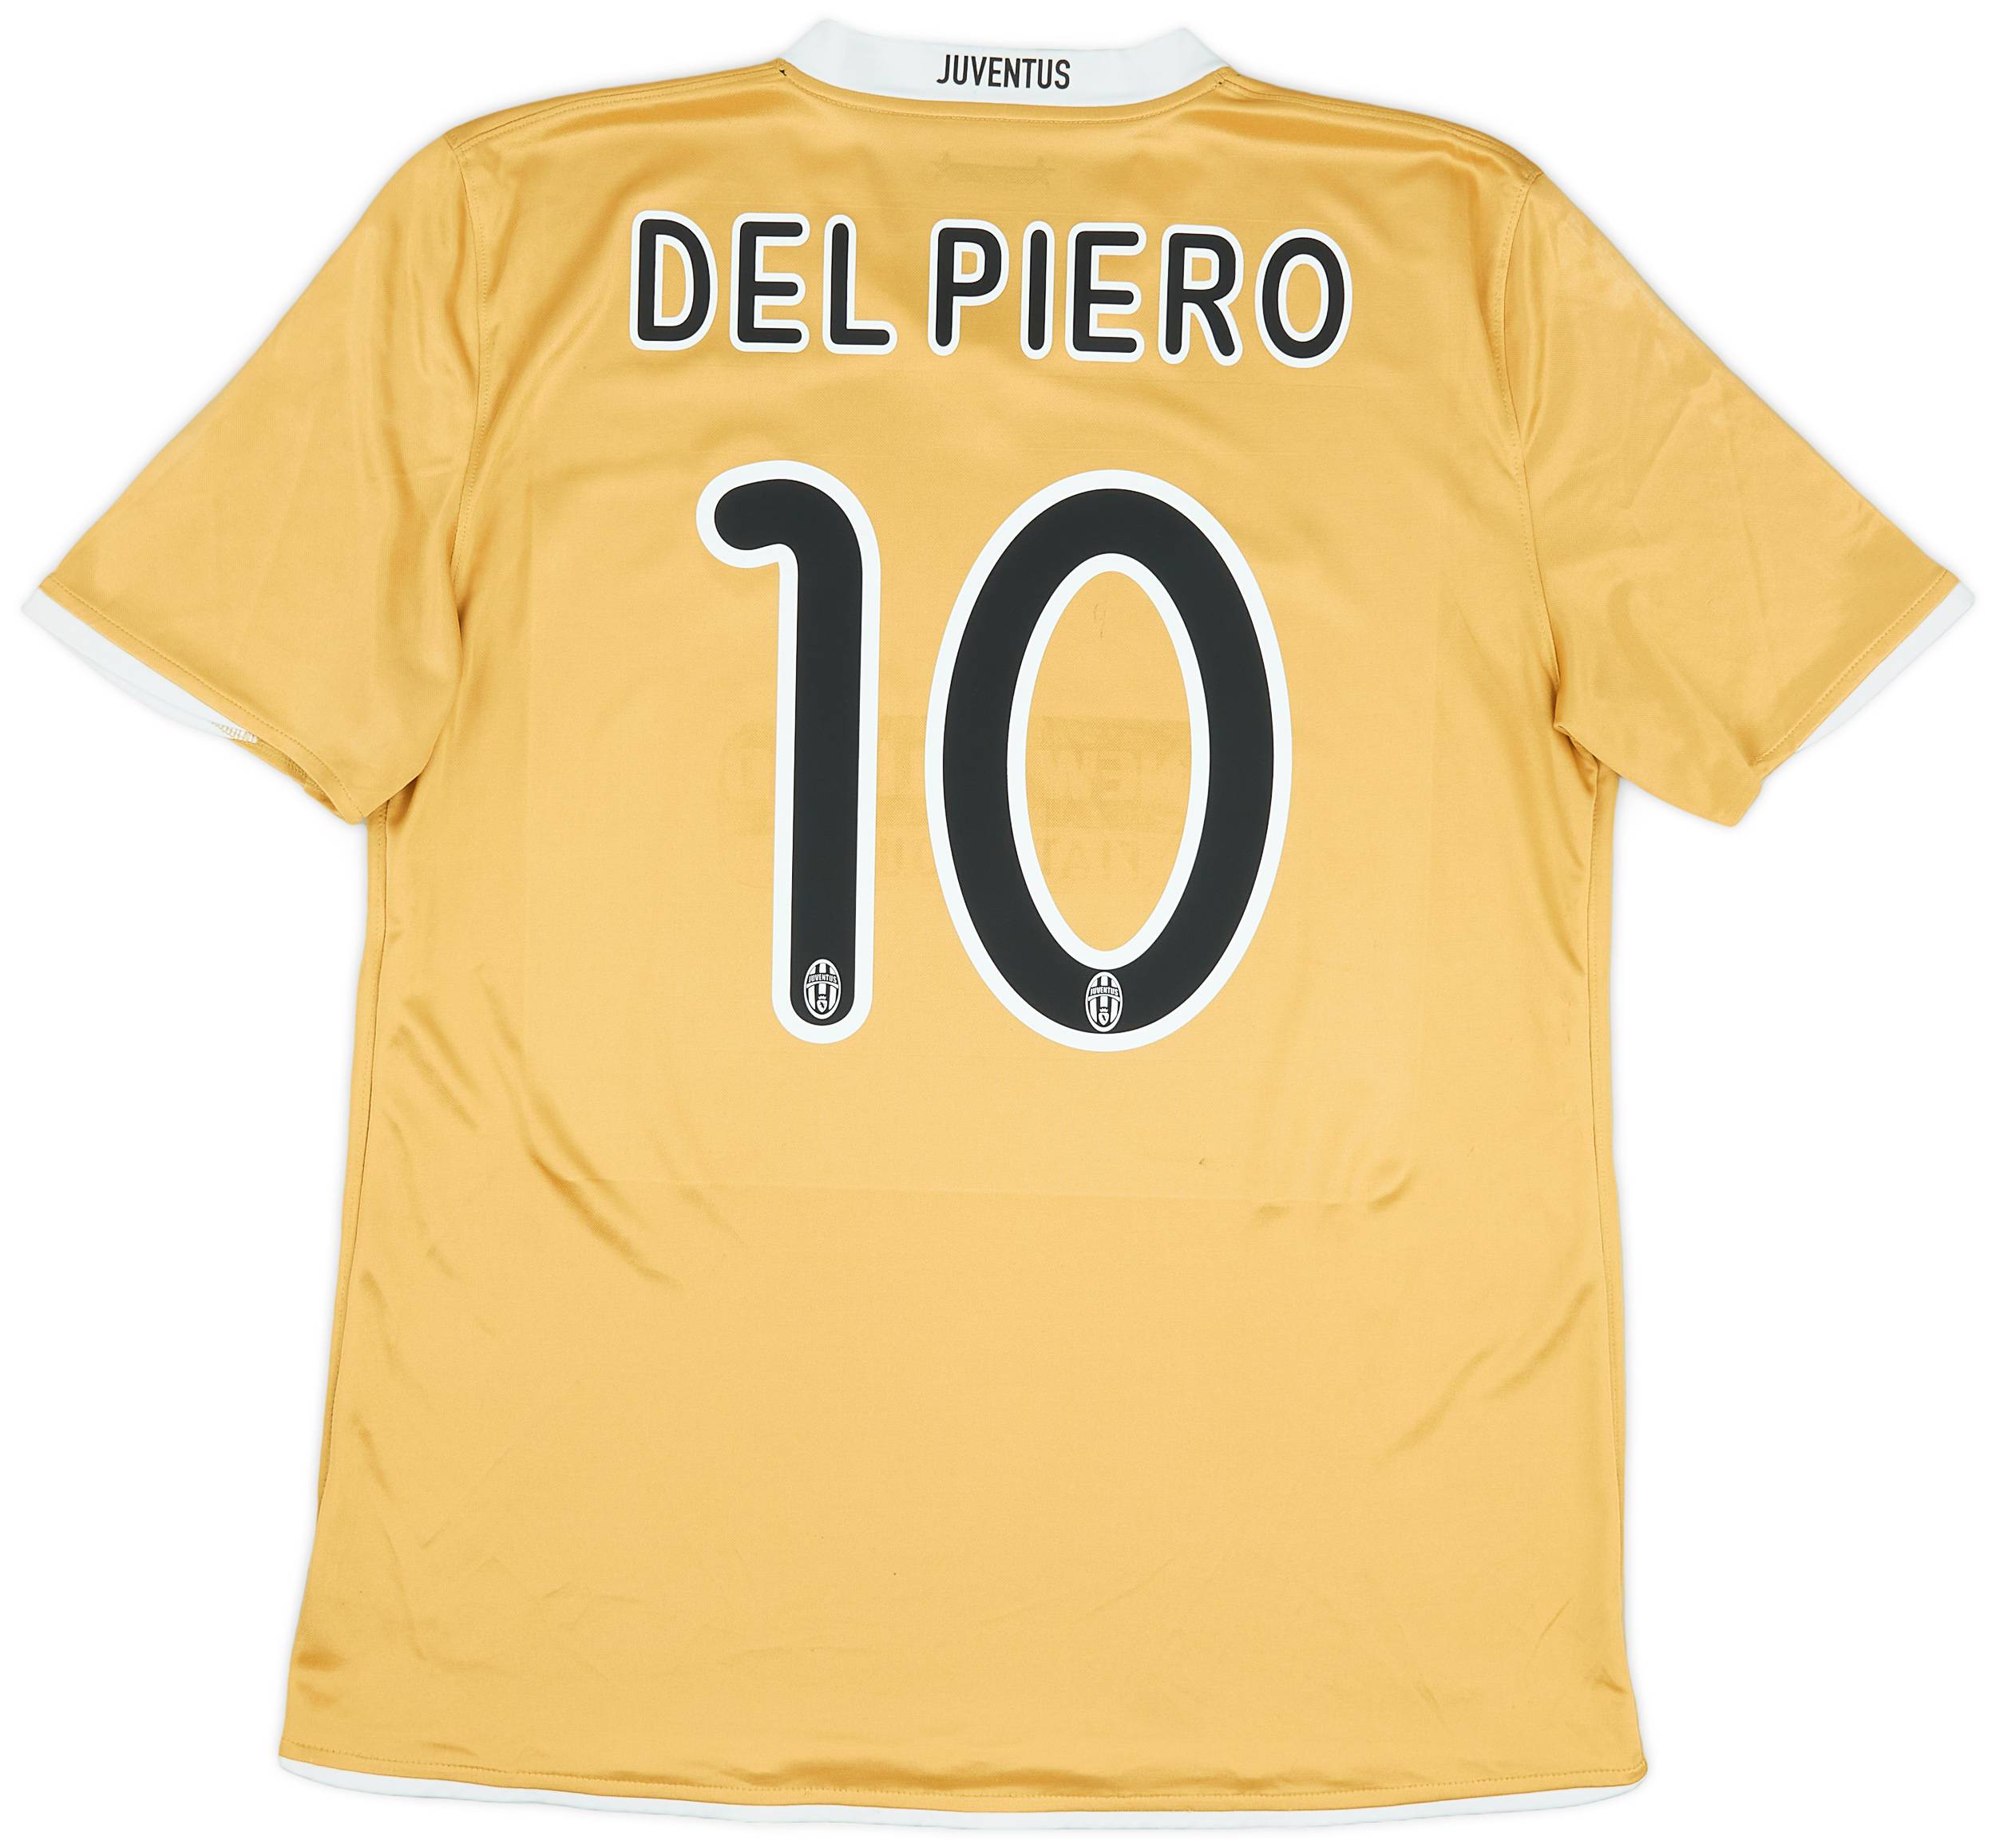 2008-09 Juventus Away Shirt Del Piero #10 - 6/10 - (L)